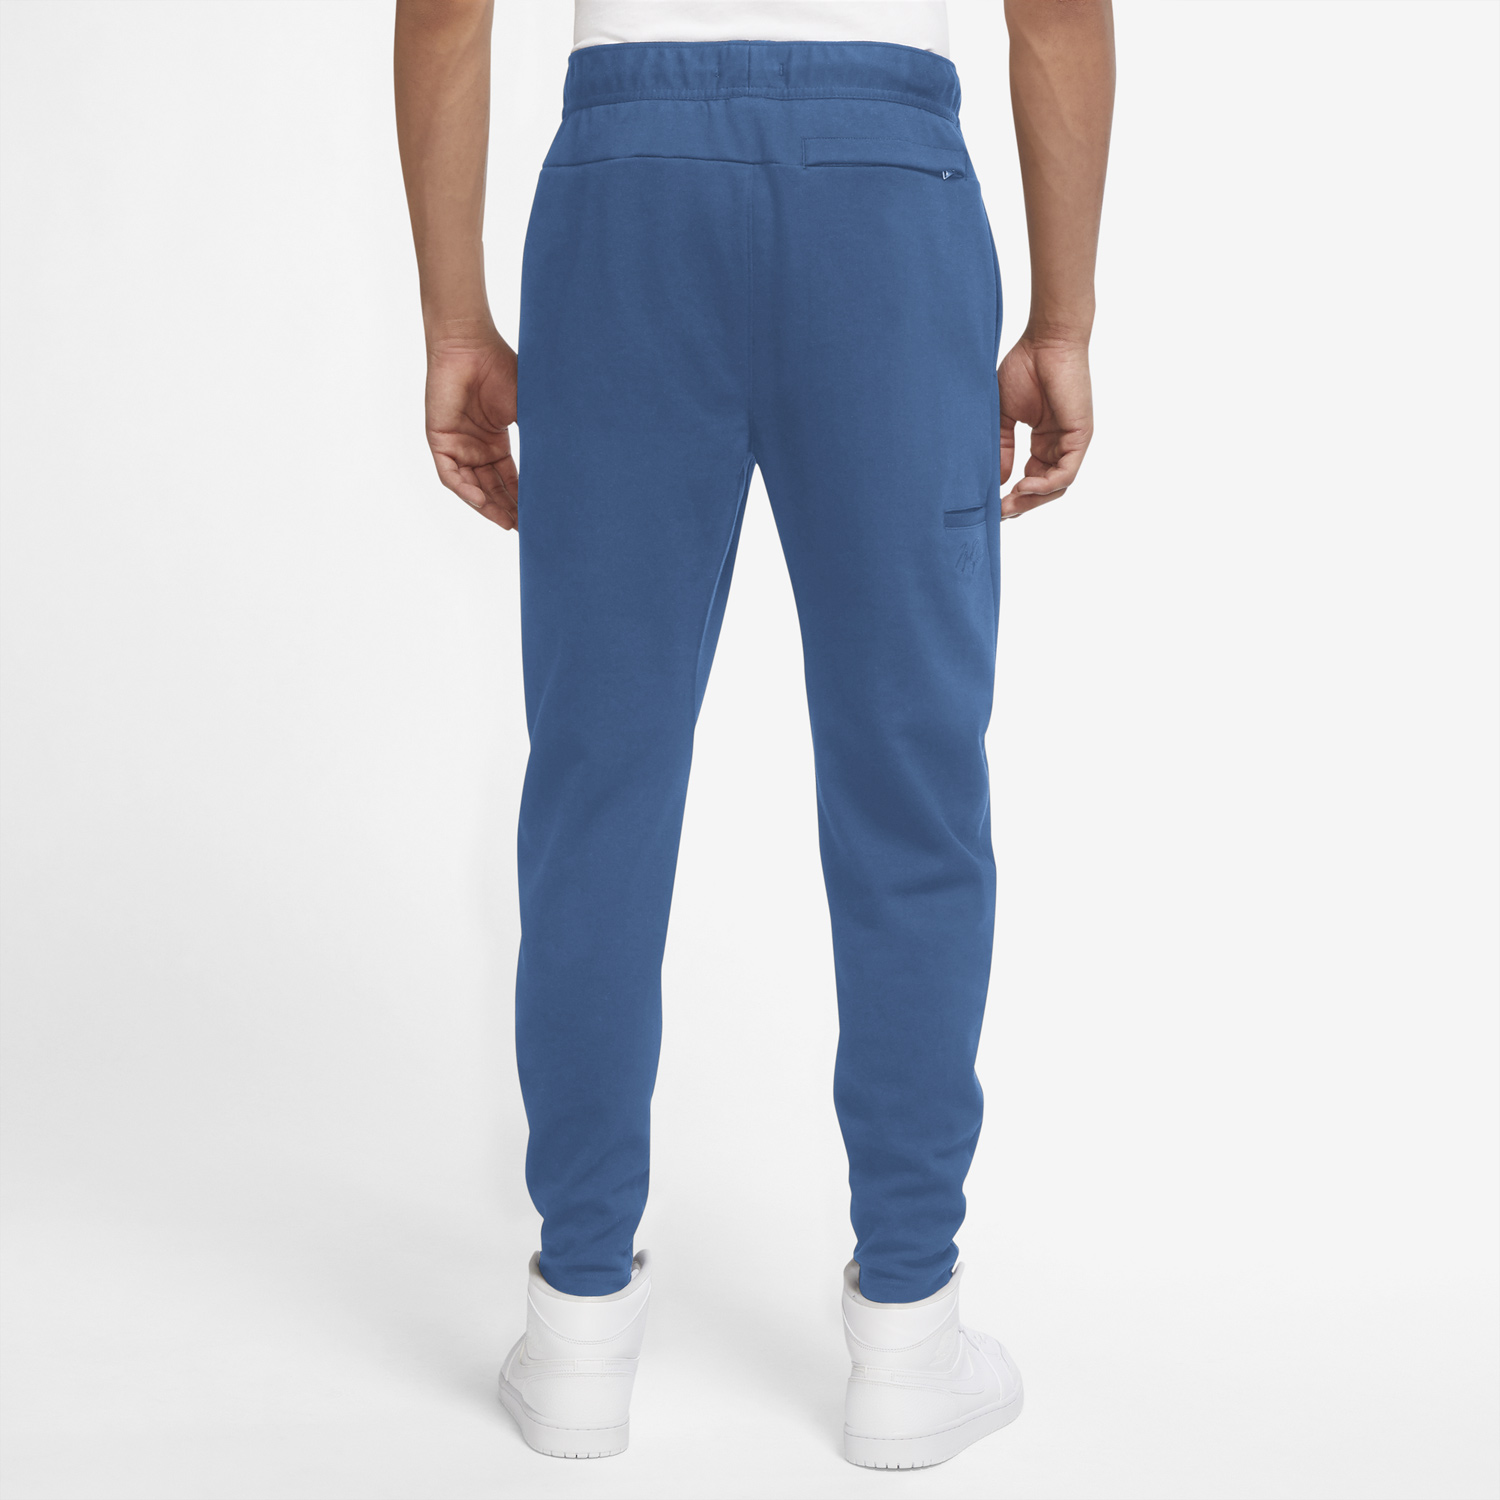 jordan-dark-marina-blue-warmup-pants-2